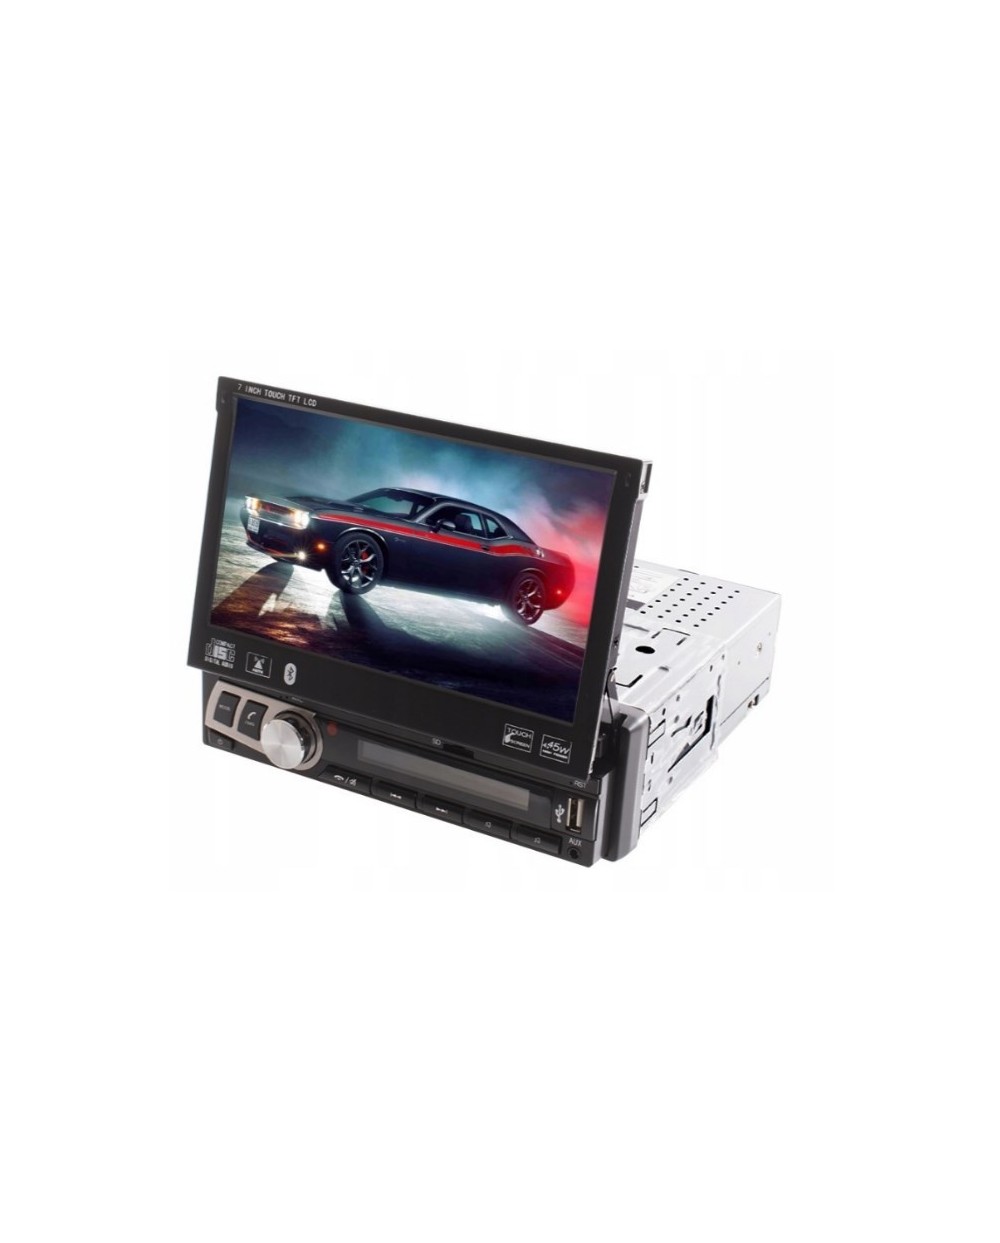 *Multimedia Οθόνη Αφής 7 inch TFT Αυτοκινήτου Bluetooth 1 DIN M706L*